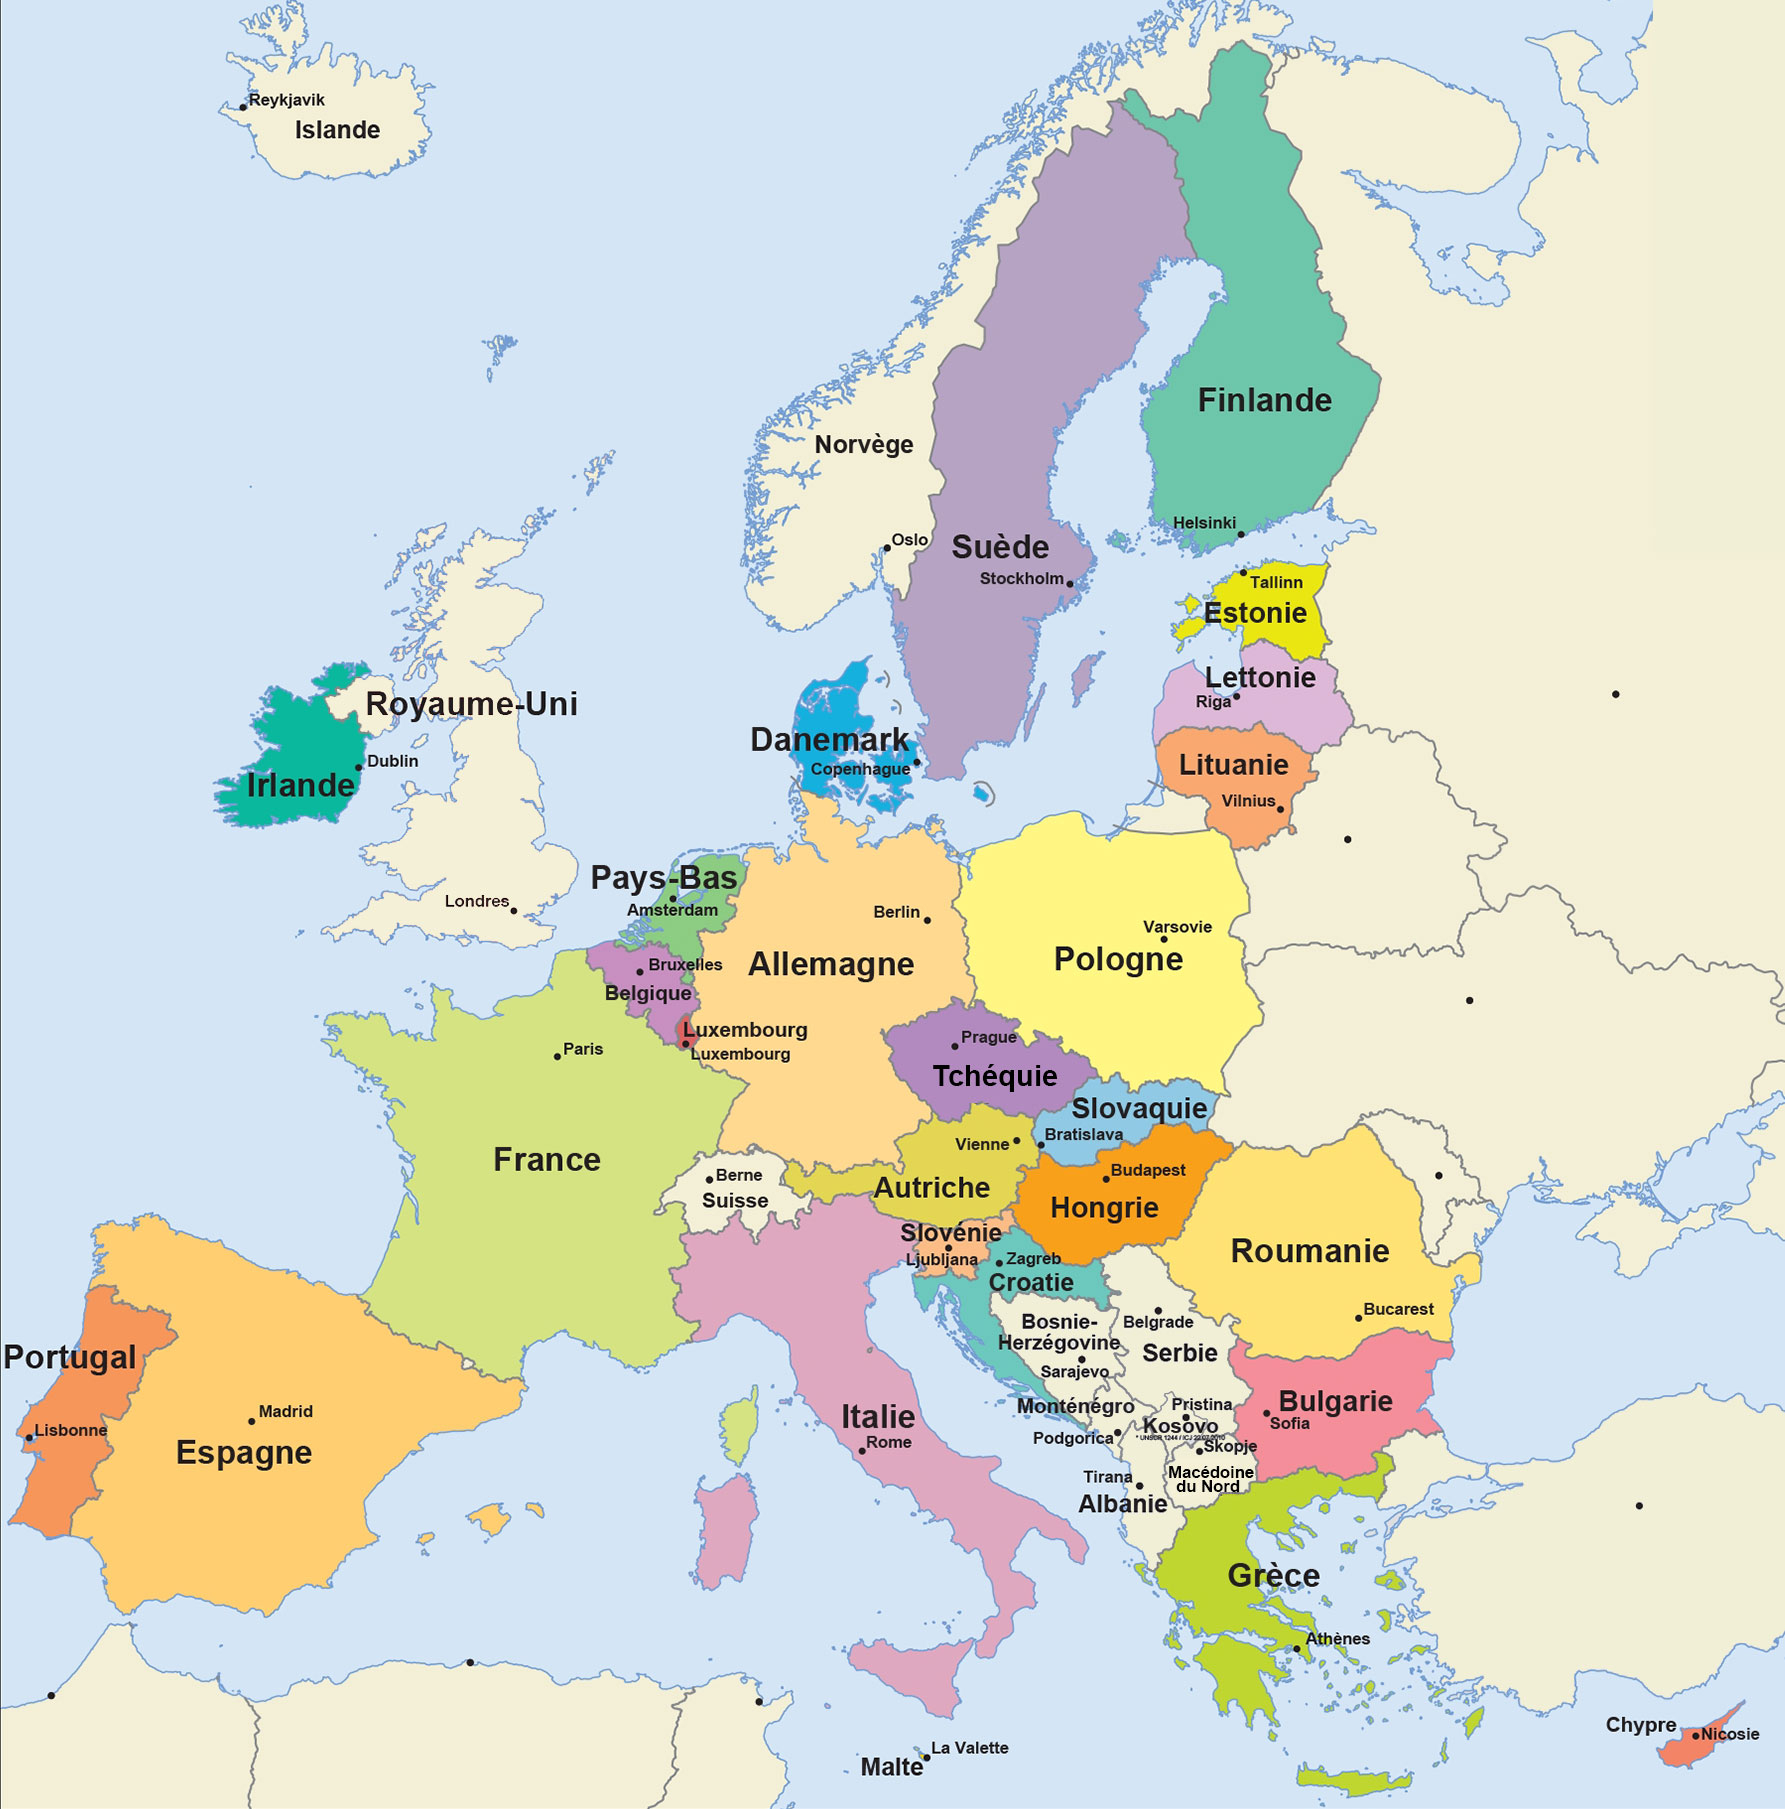 La Carte De L Union Européenne | Primanyc pour Carte Union Européenne 28 Pays